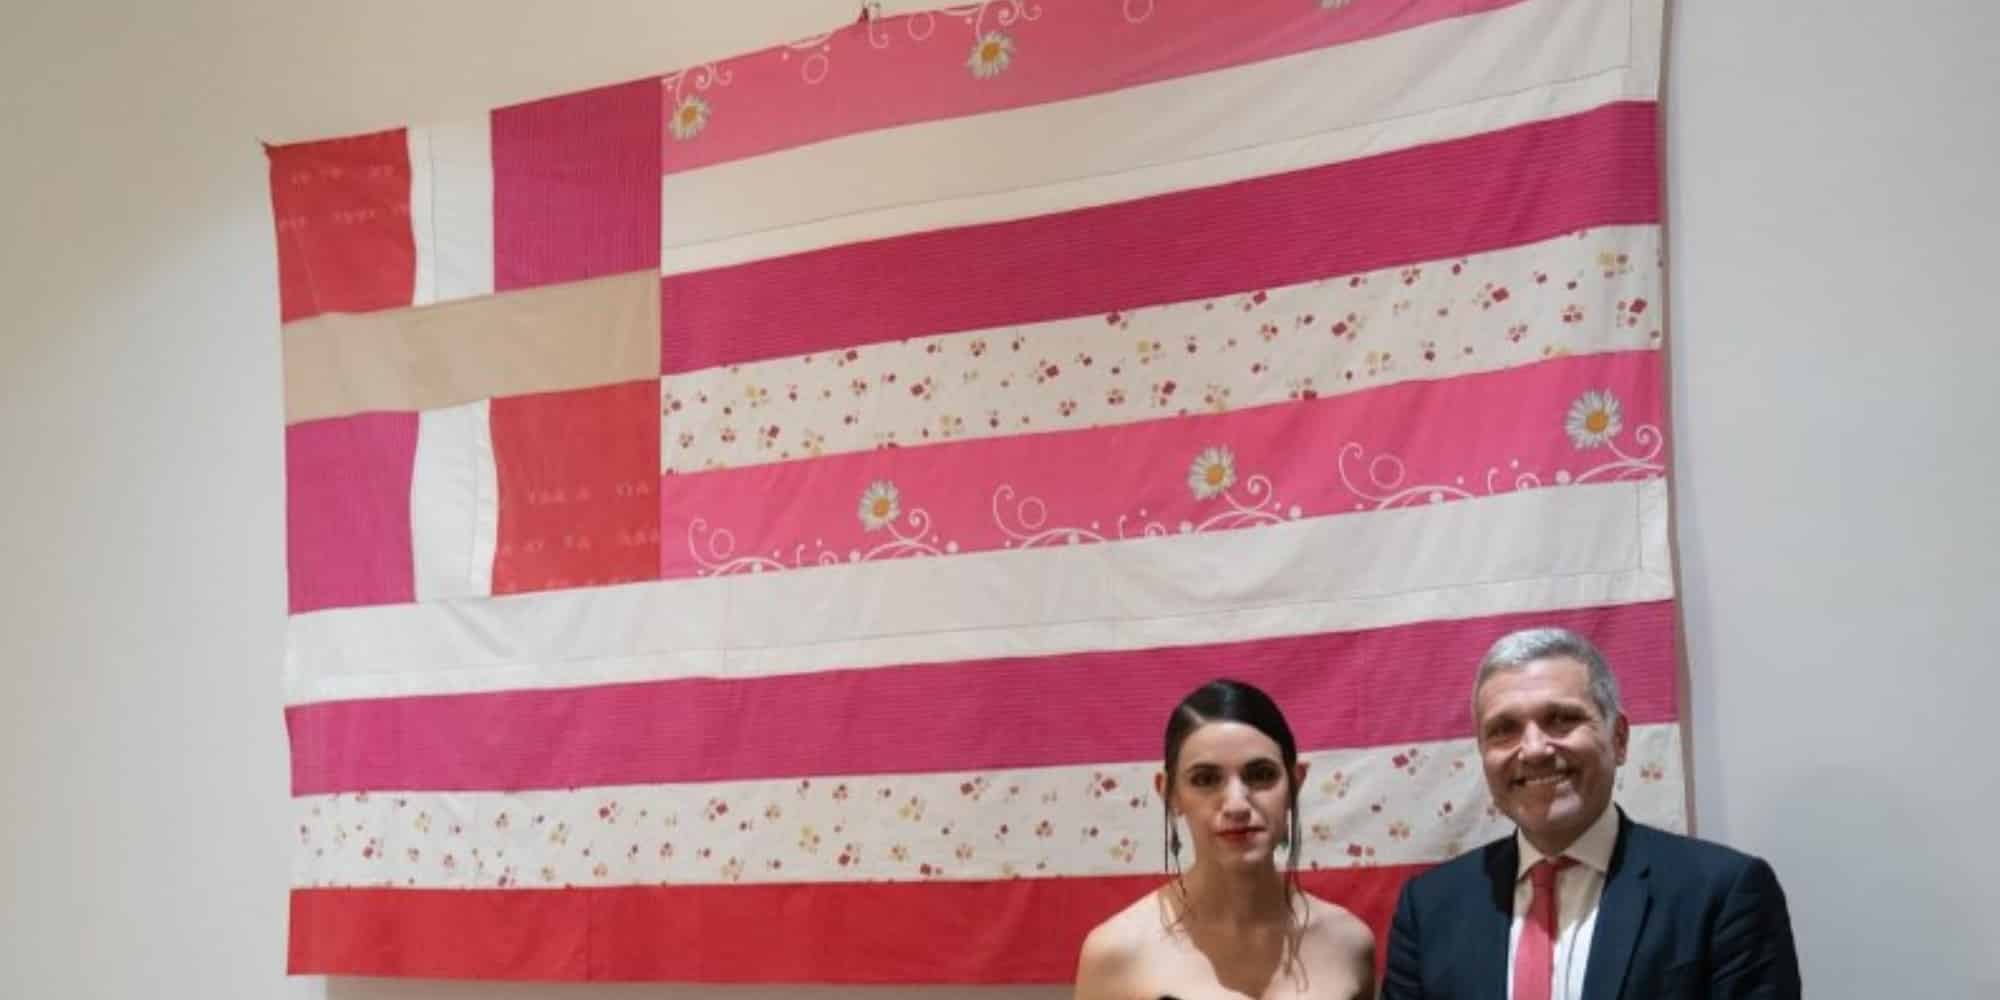 Η ροζ ελληνική σημαία που εμφανίστηκε στο προξενείο στη Νέα Υόρκη